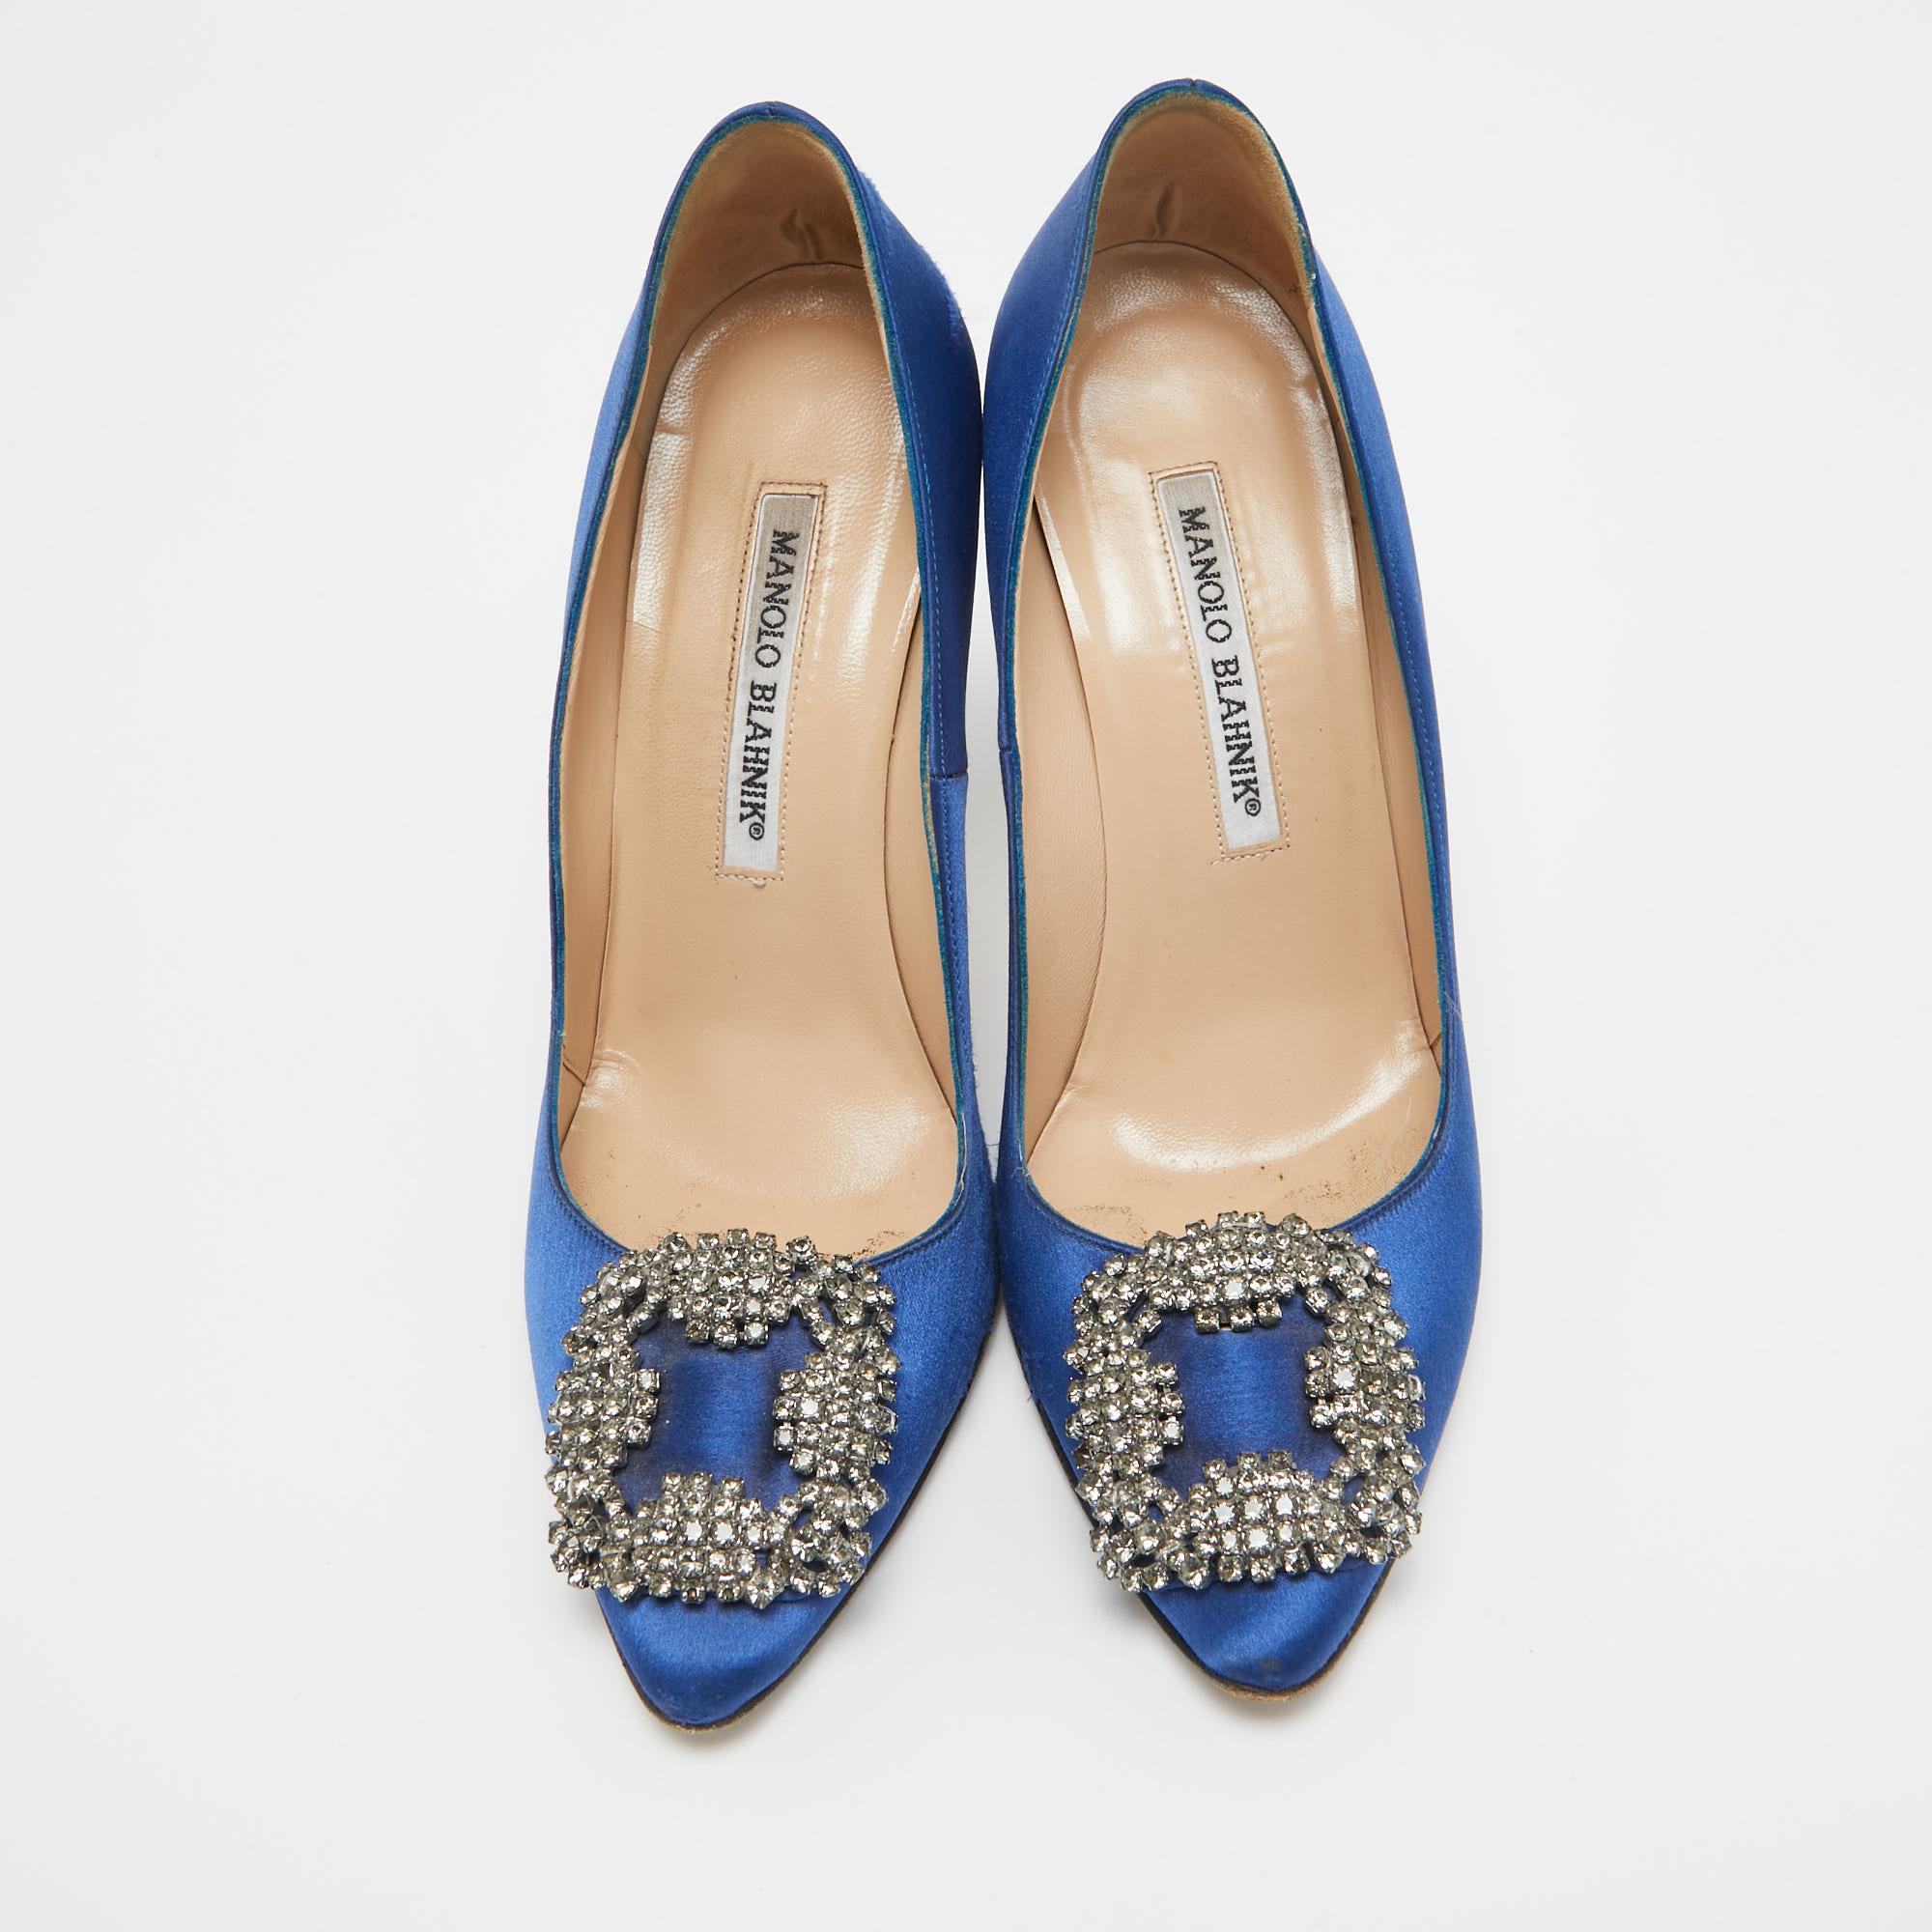 Ces chaussures bleues authentiques de Manolo Blahnik complètent votre tenue. Intemporelles et élégantes, elles bénéficient d'une construction étonnante pour une qualité durable et une tenue confortable.

